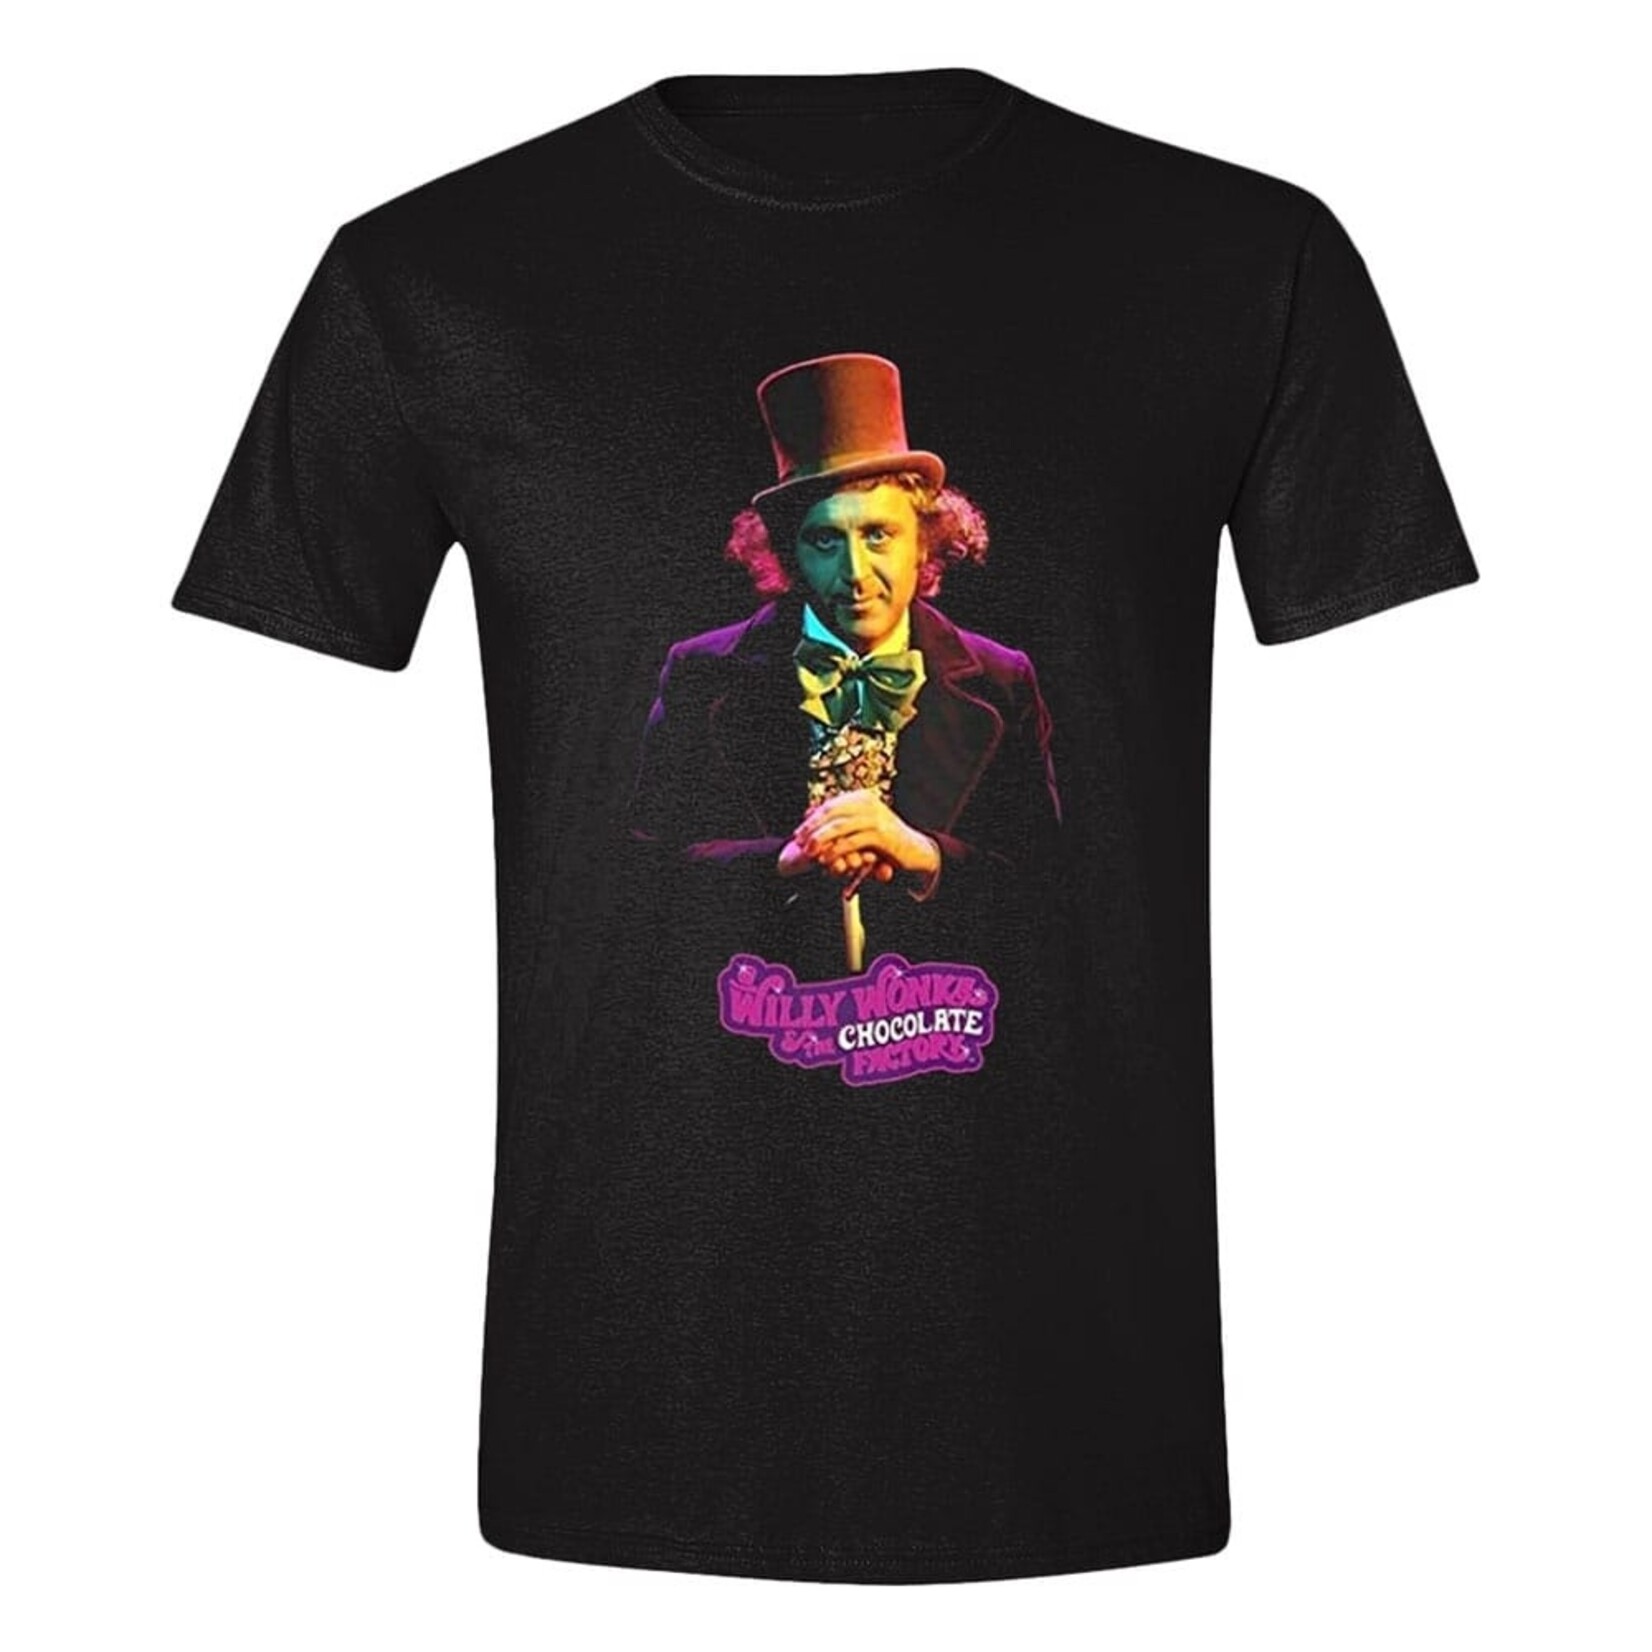 PC Merch PC Merch Willy Wonka T-Shirt Willy Wonka